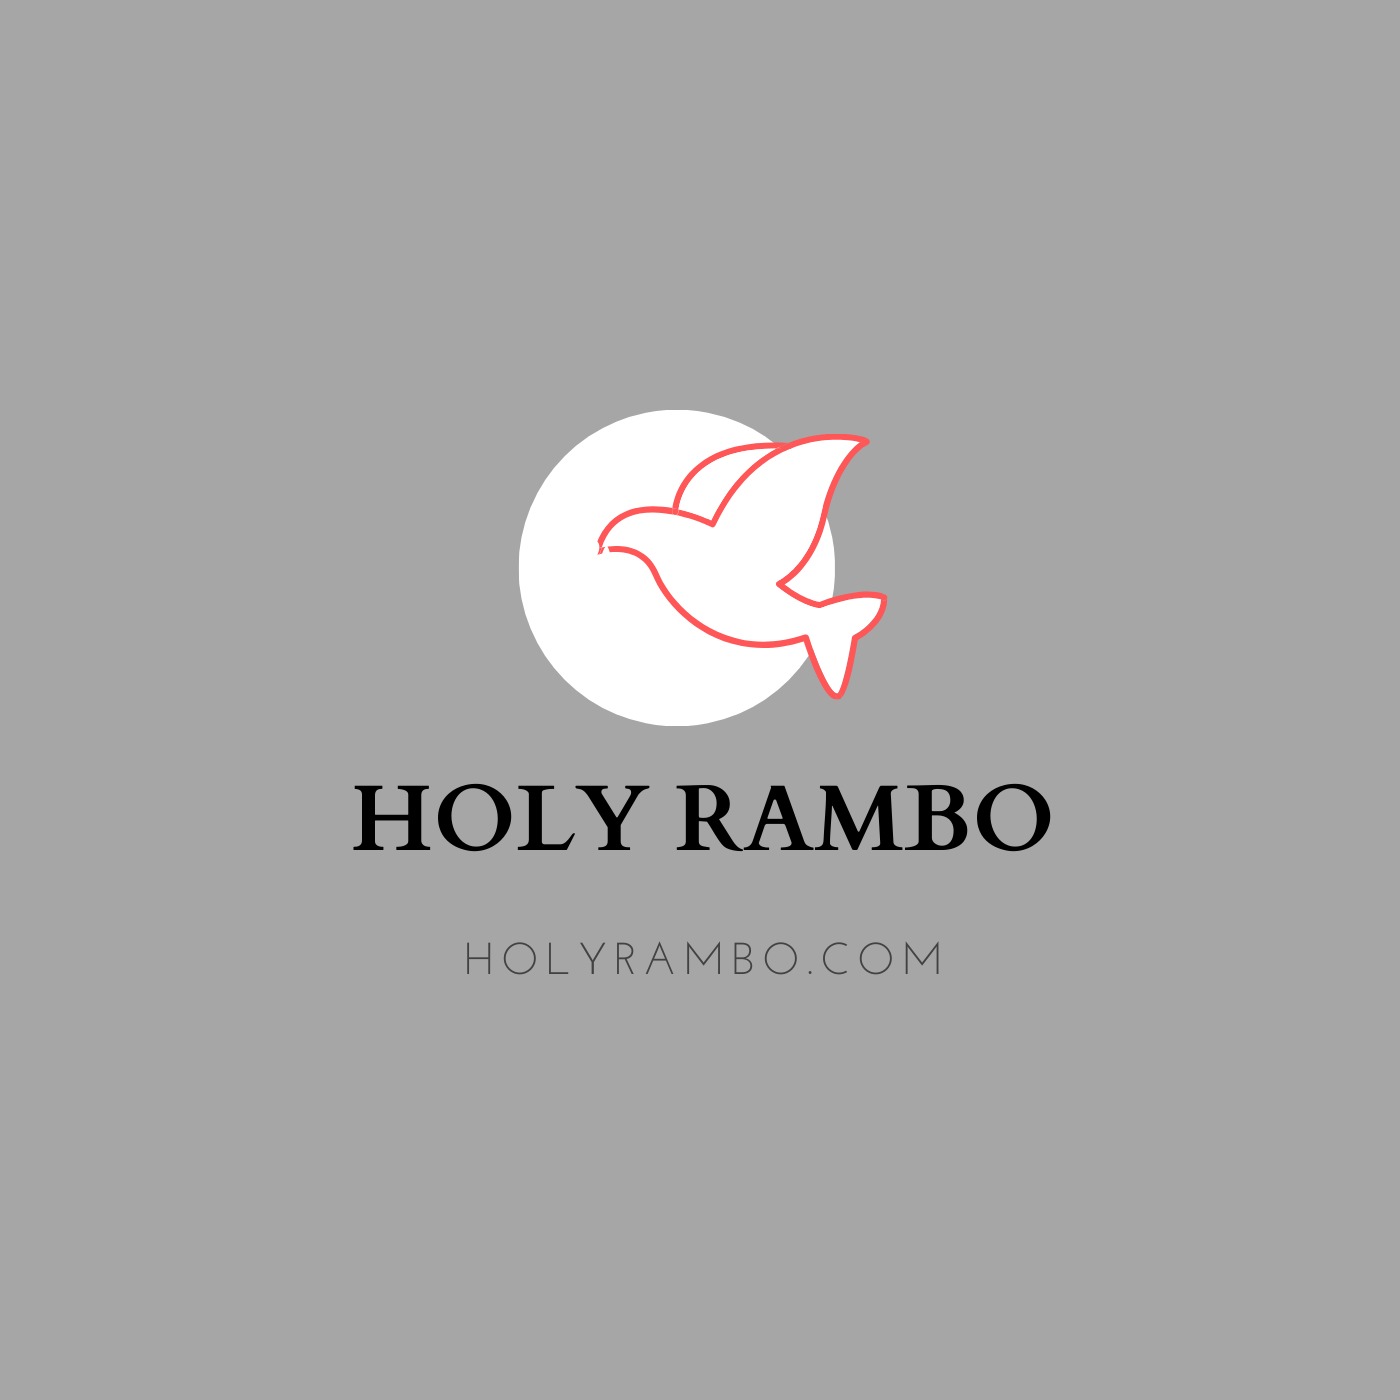 Holy Rambo